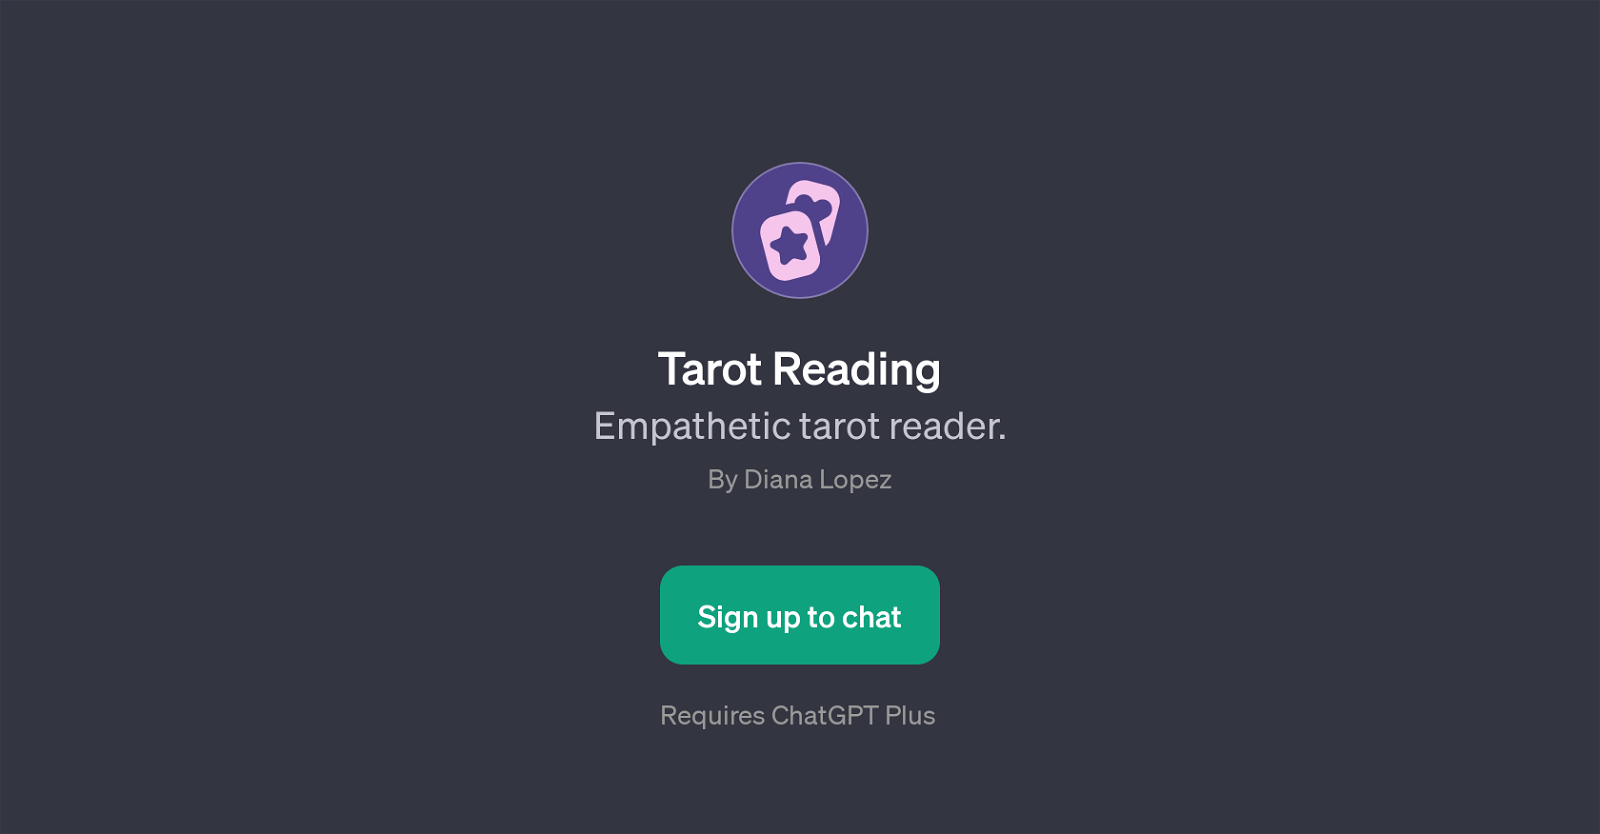 Tarot Reading website